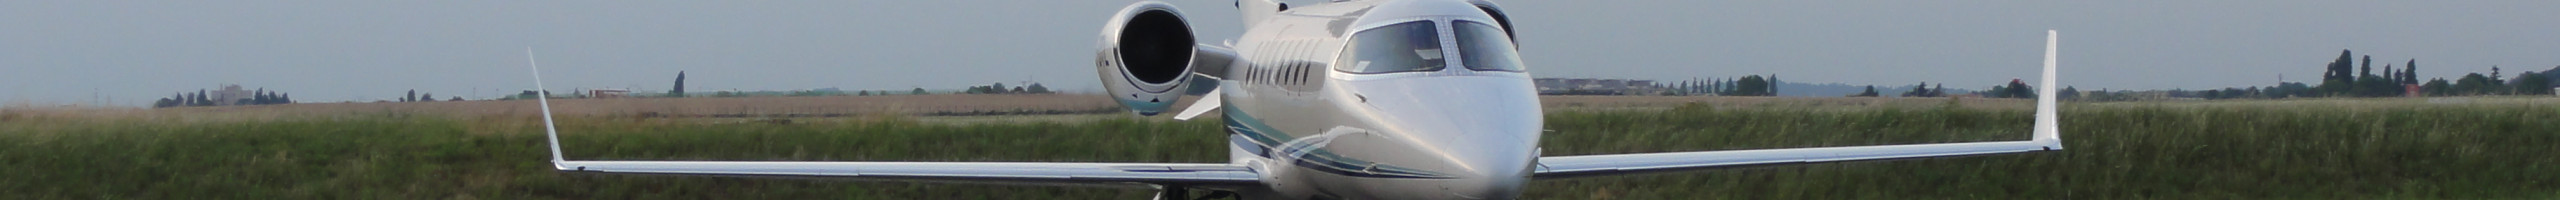 Vols sanitaires en avion ambulance, rapatriement en avion sanitaire